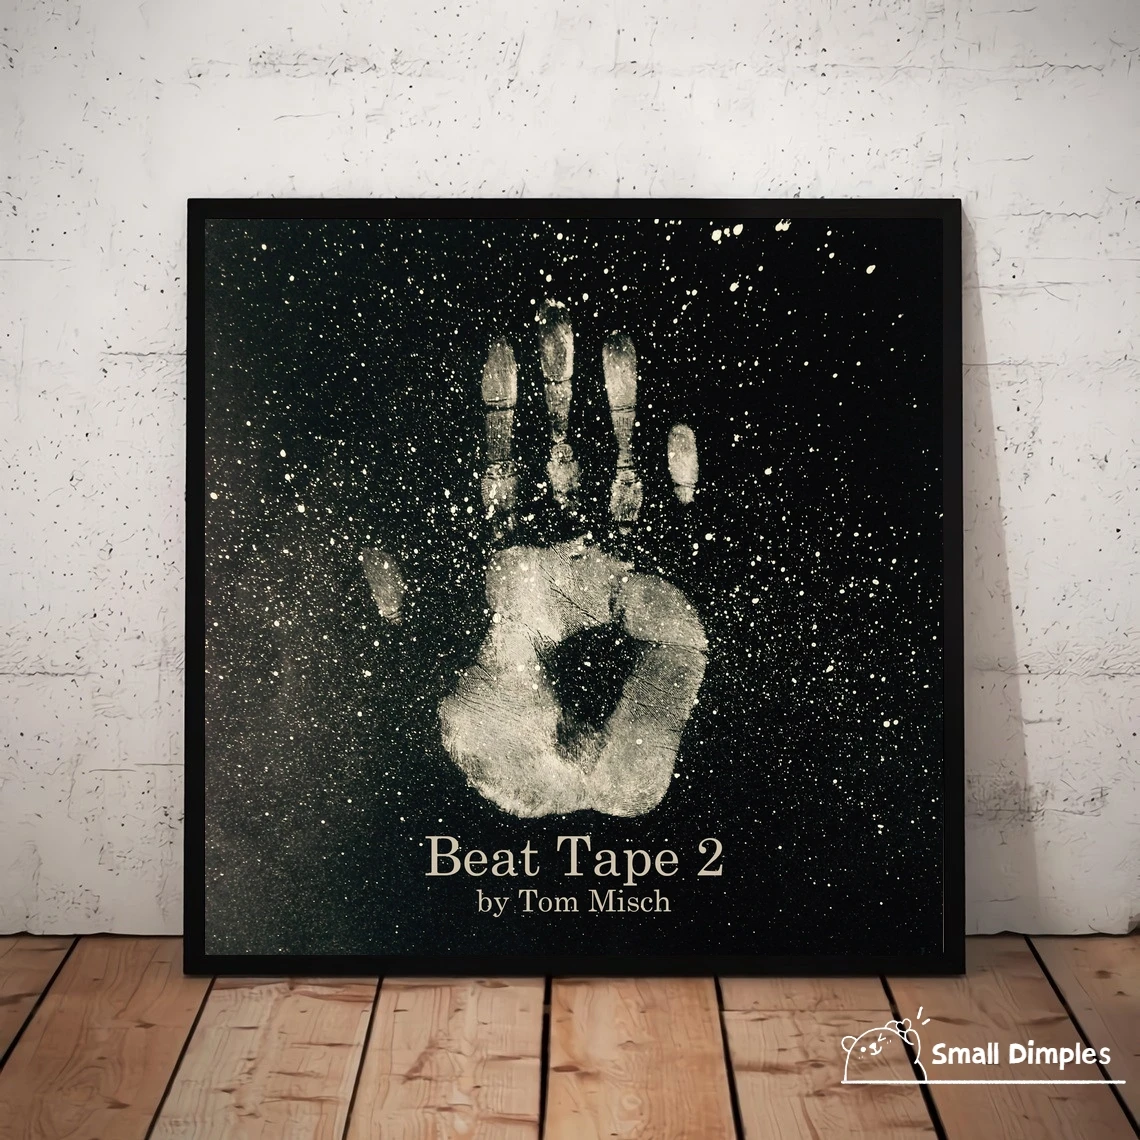 

Tom Misch Beat Tape 2 музыкальный альбом, Обложка, Постер, холст, Художественная печать, украшение для дома, настенная живопись (без рамки)